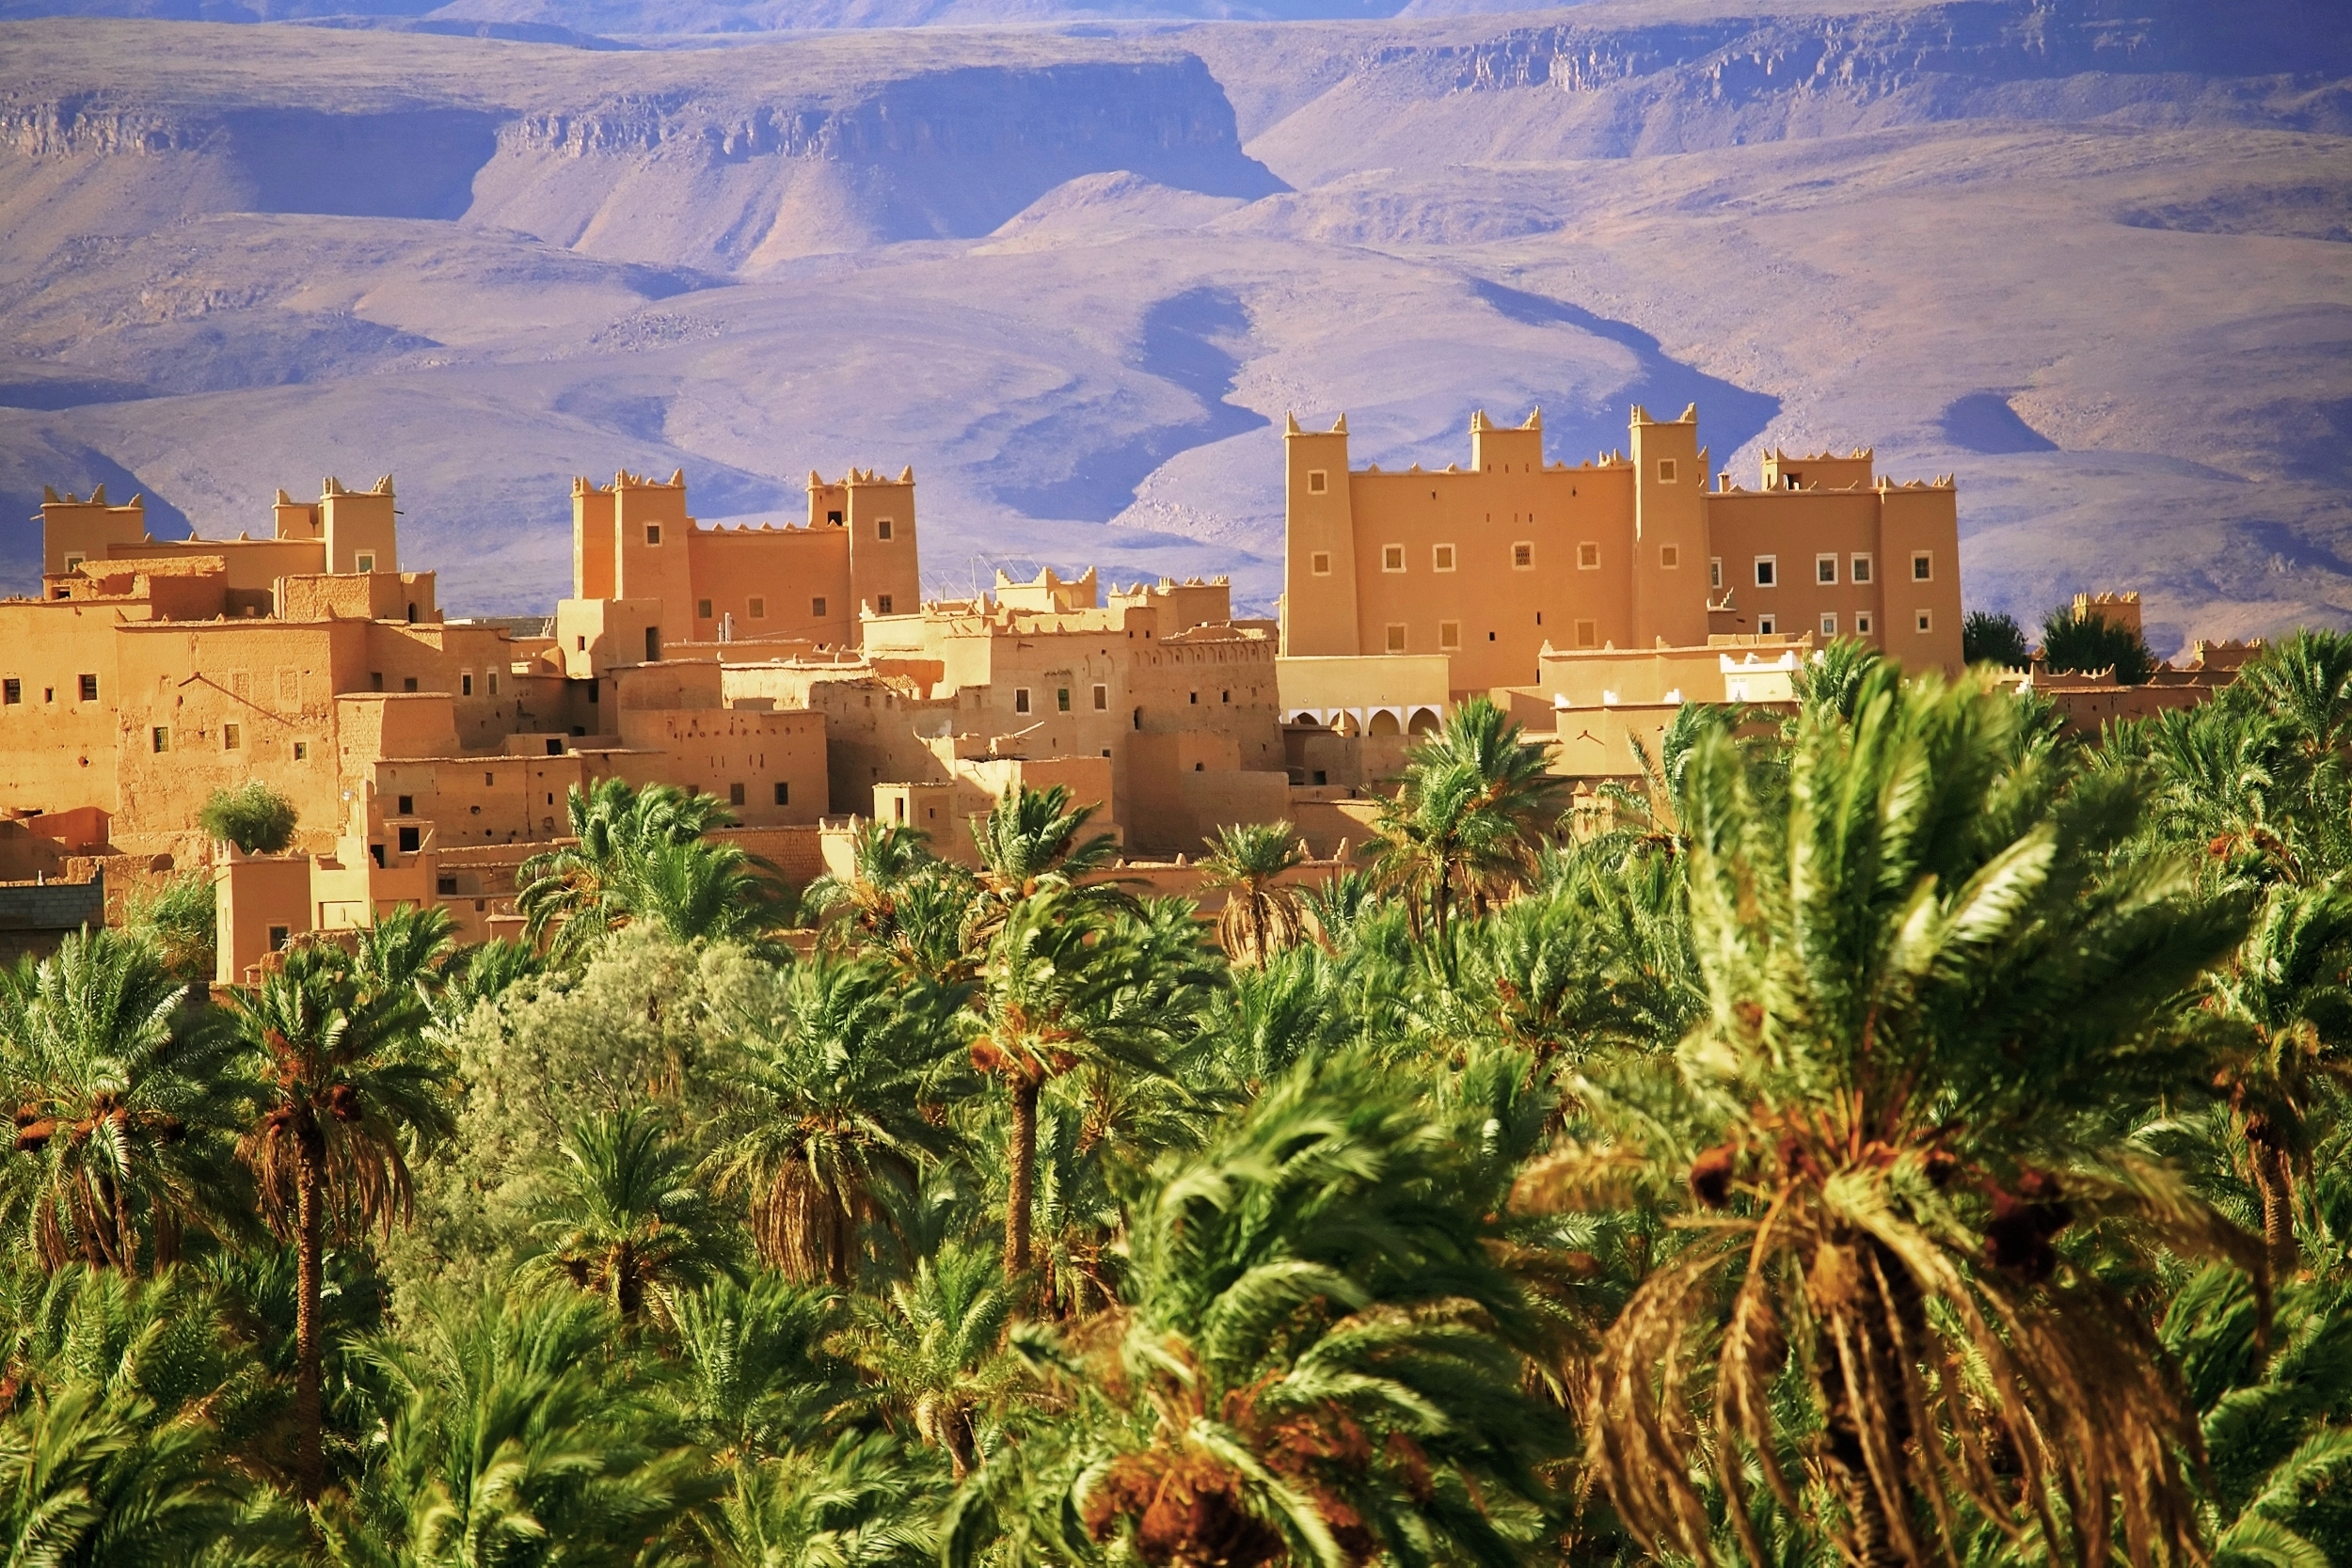 06 days Morocco desert tour to Erg Chebbi and Erg Chigaga dunes from Marrakech